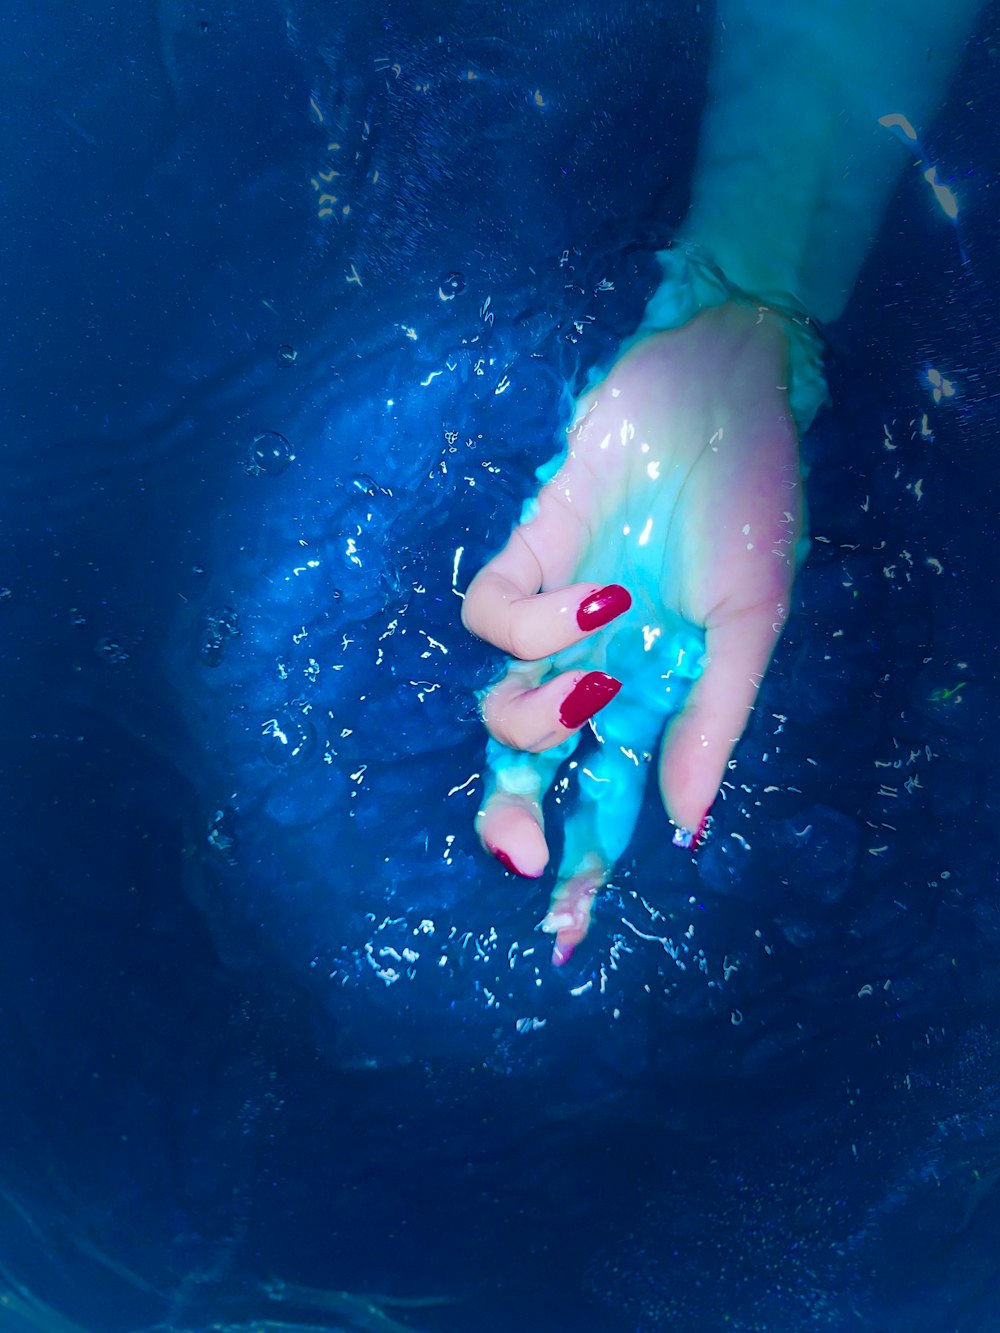 La mano de una persona en el agua con esmalte de uñas rojo